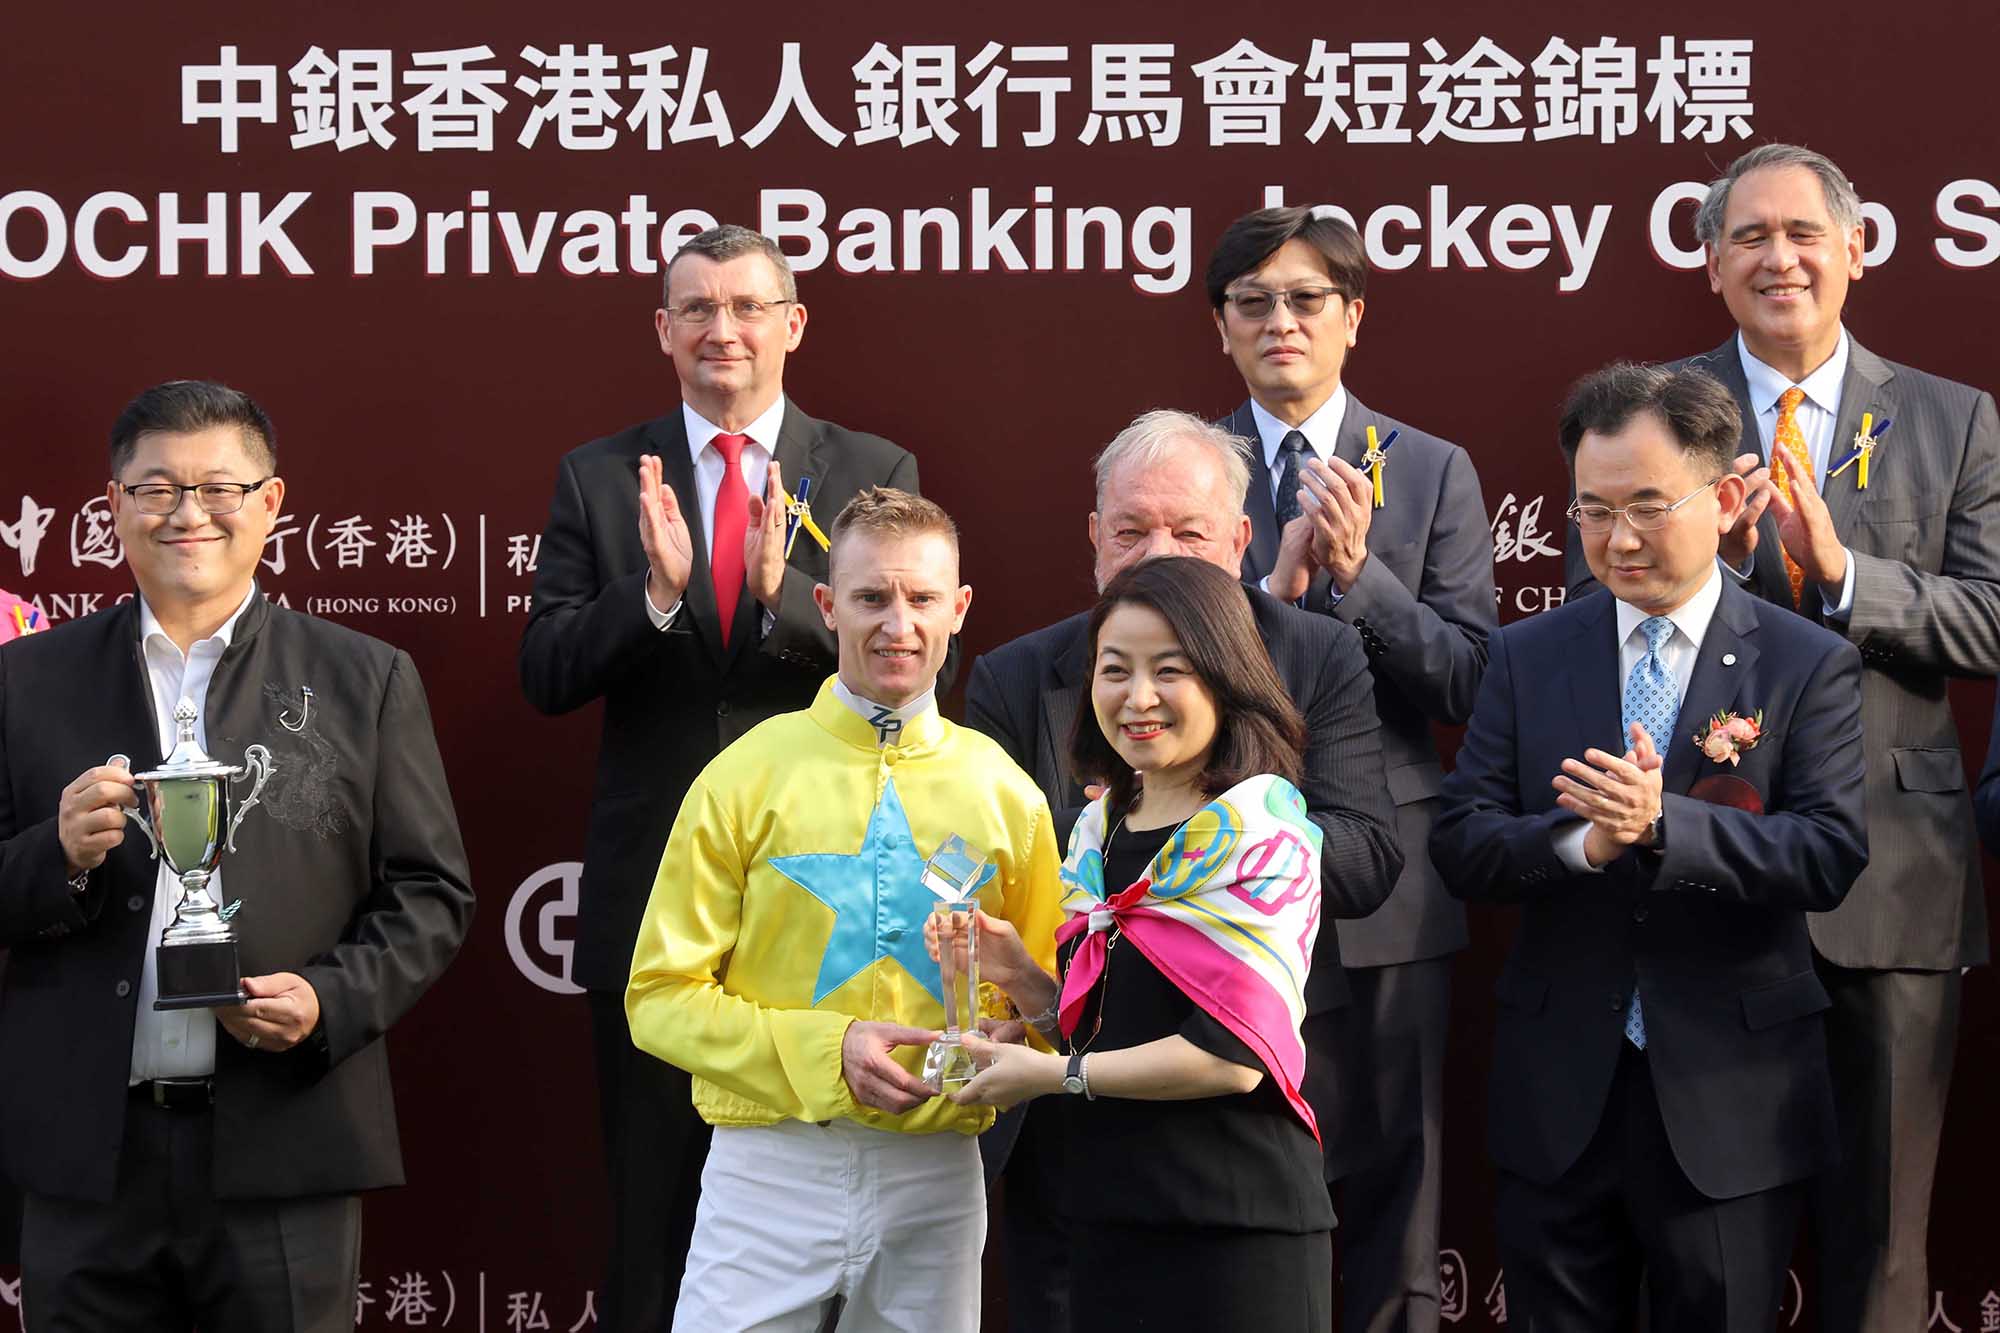 中國銀行（香港）有限公司個人數字金融產品部總經理盧慧敏頒發水晶獎座予「金鑽貴人」的騎師潘頓。